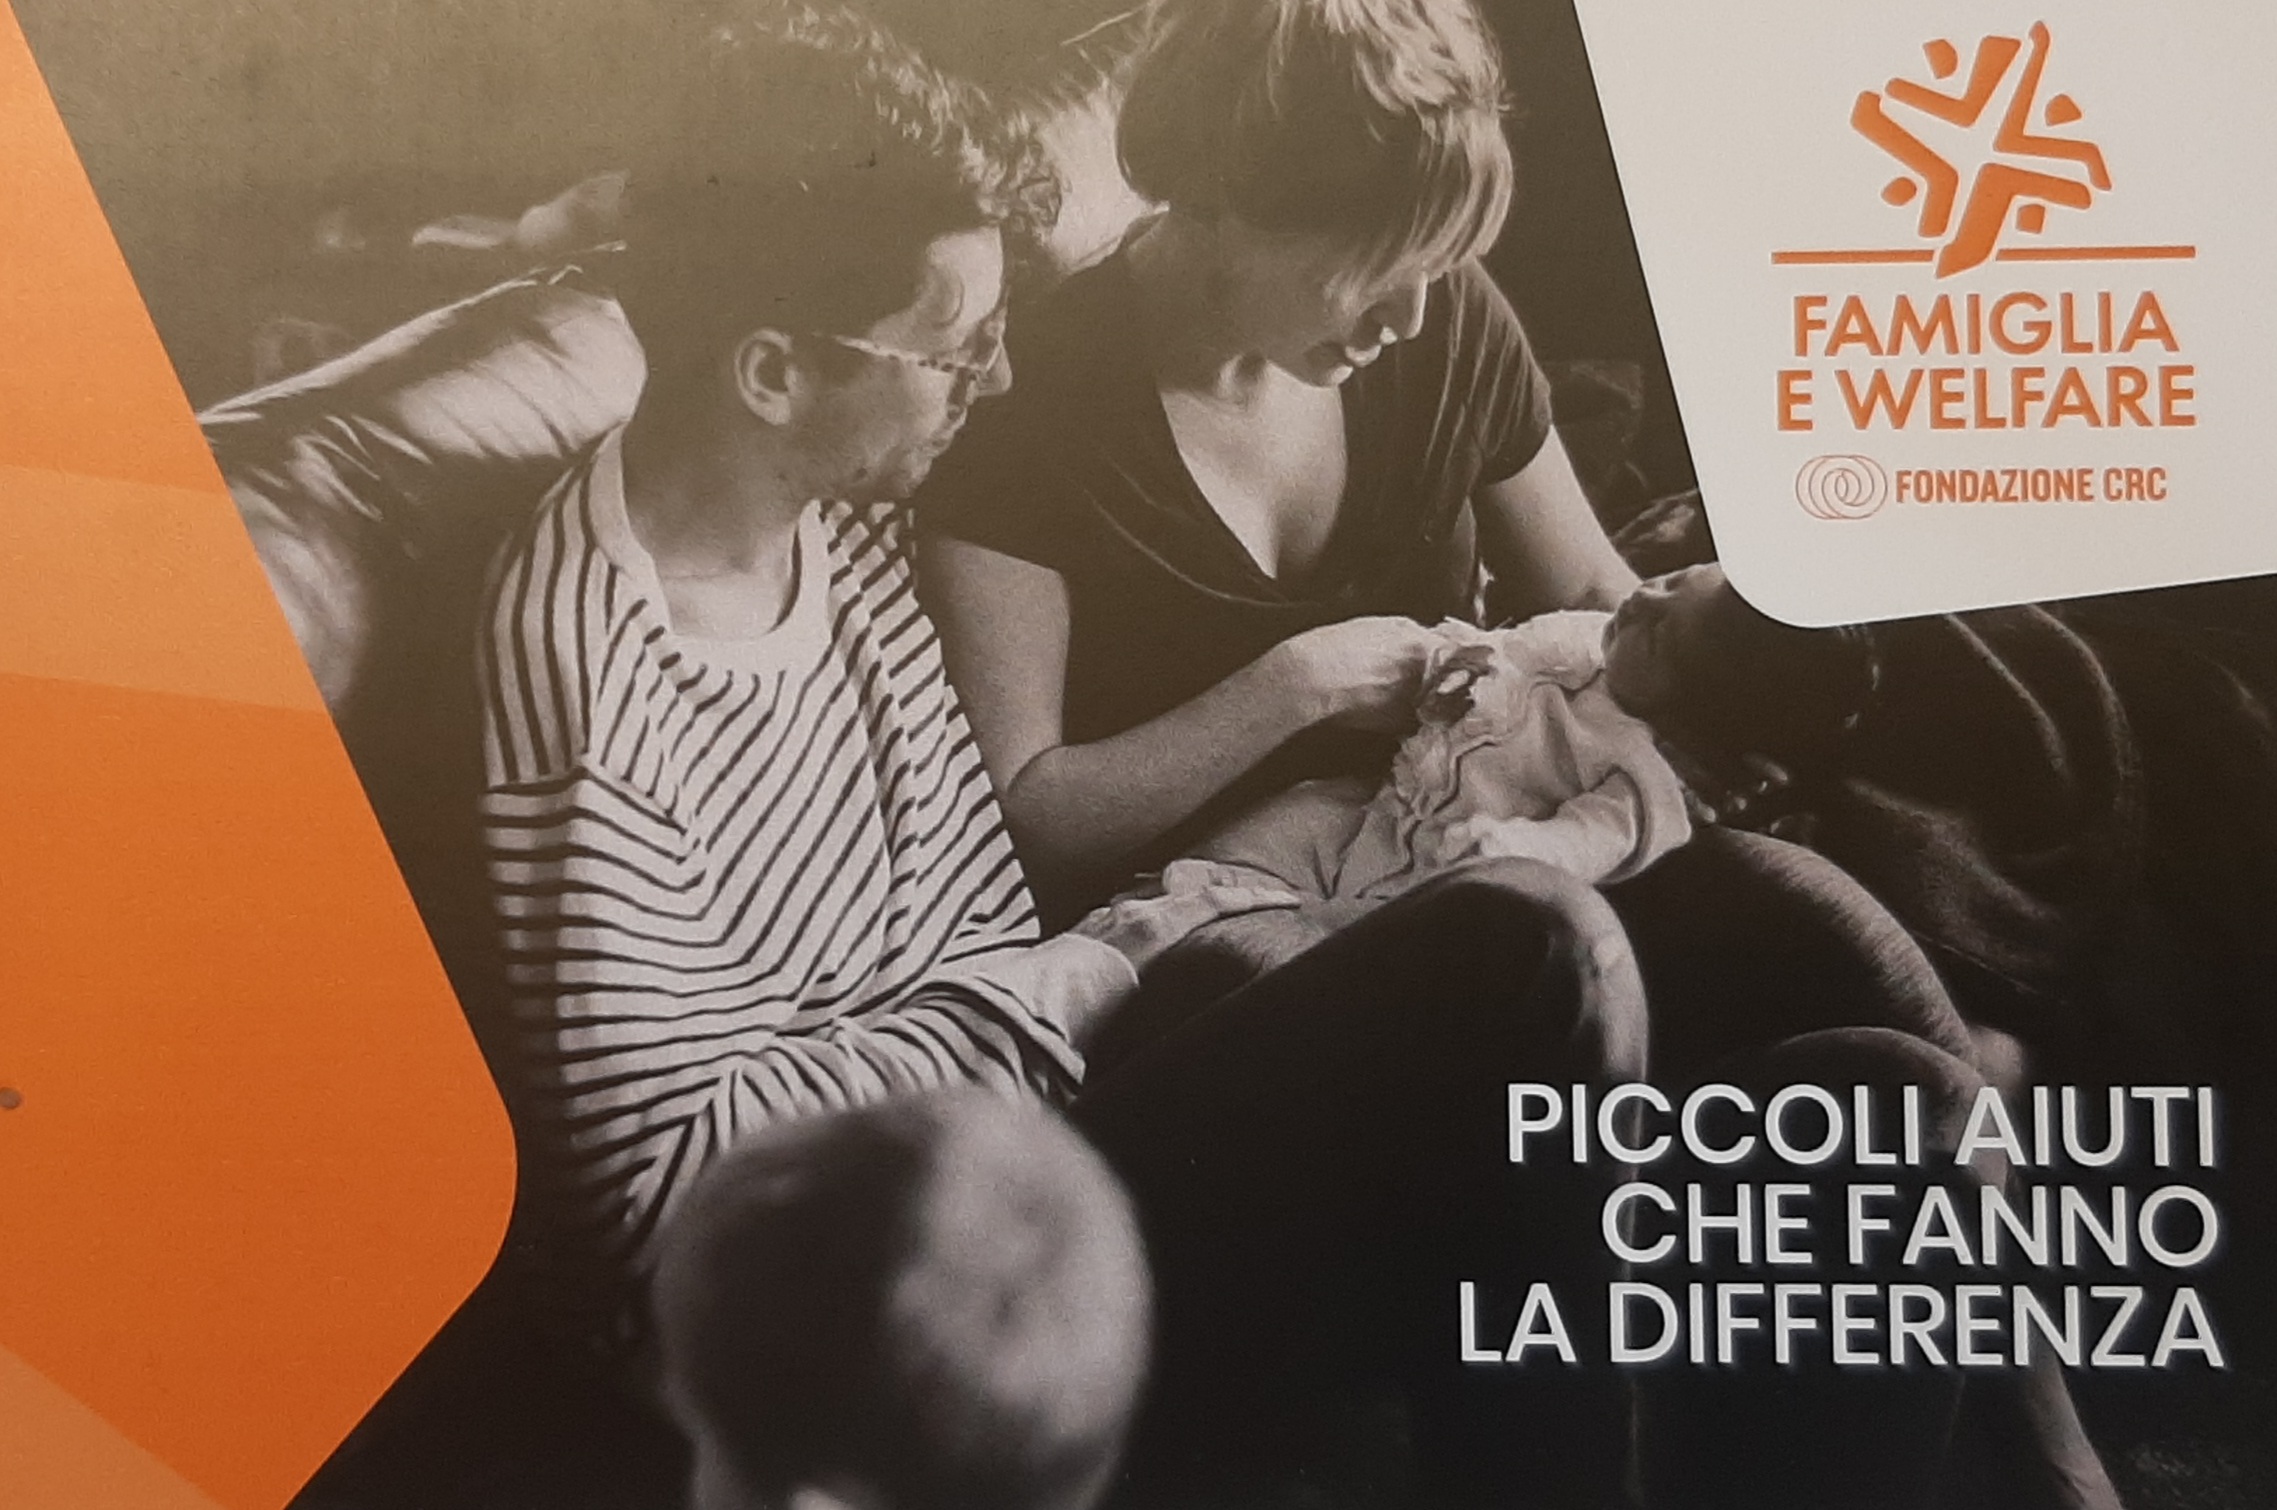 Famiglia e welfare - Piccoli aiuti che fanno la differenza - Fondazione CRC